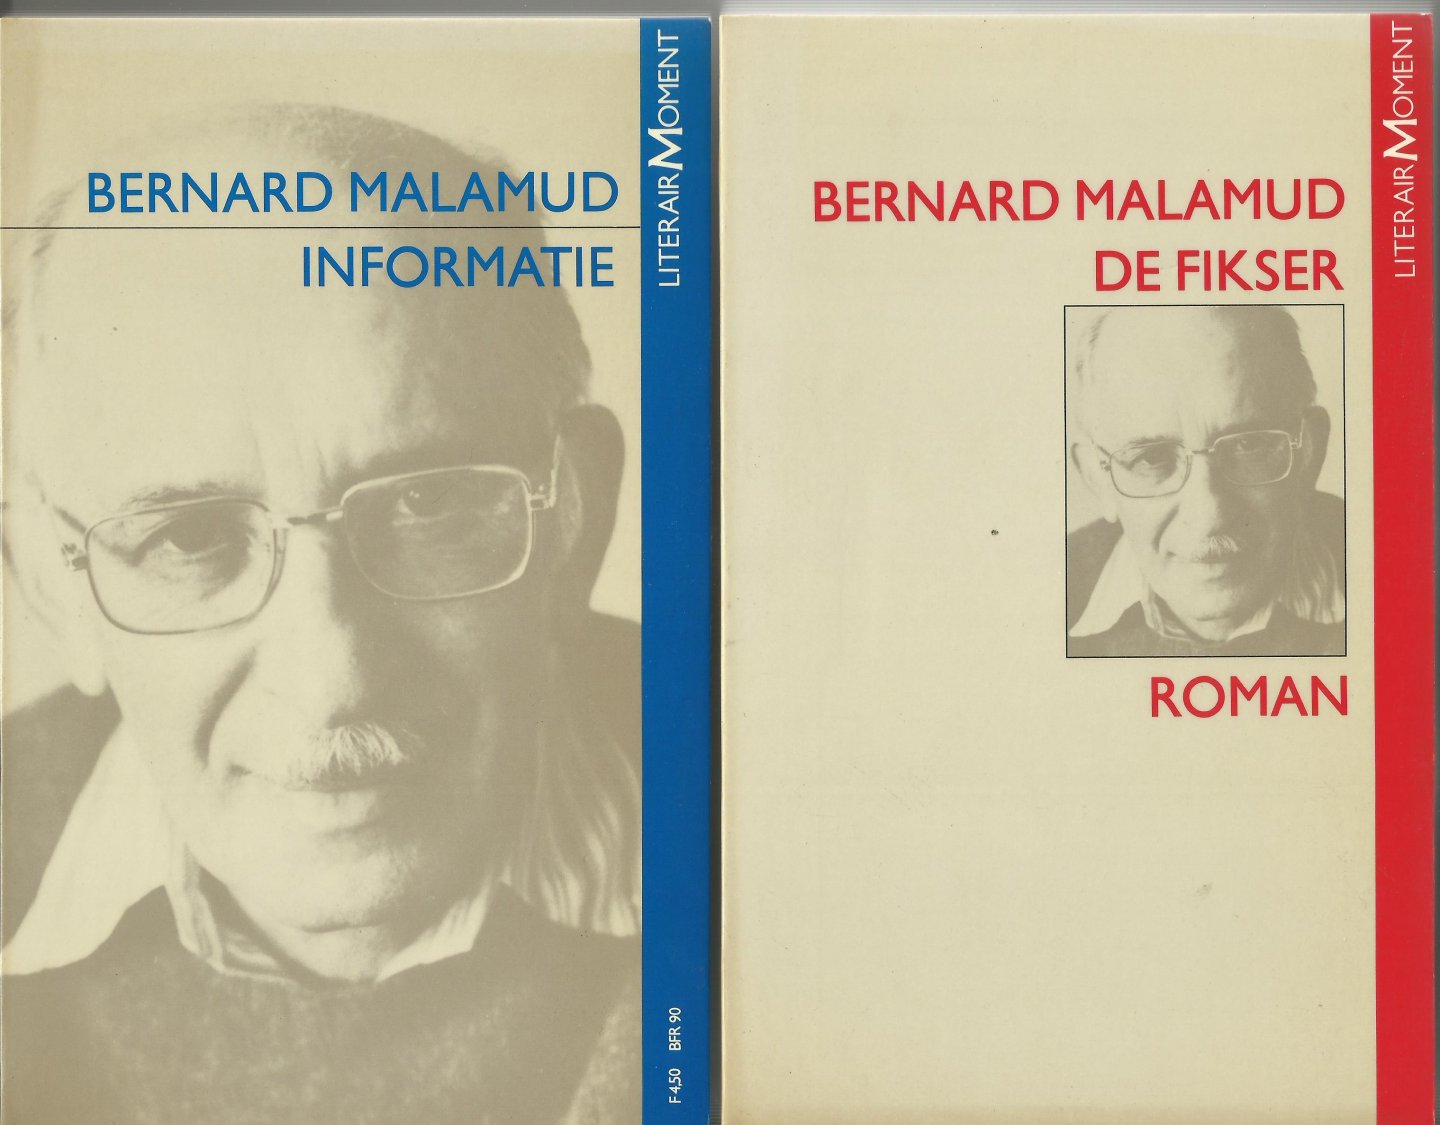 Malamud, Bernard/ Romijn Meijer, Henk - De Fikser/ Bernard Malamud. Informatie (DE COMPLETE 'LITERAIR MOMENT' SET, 2 boeken)